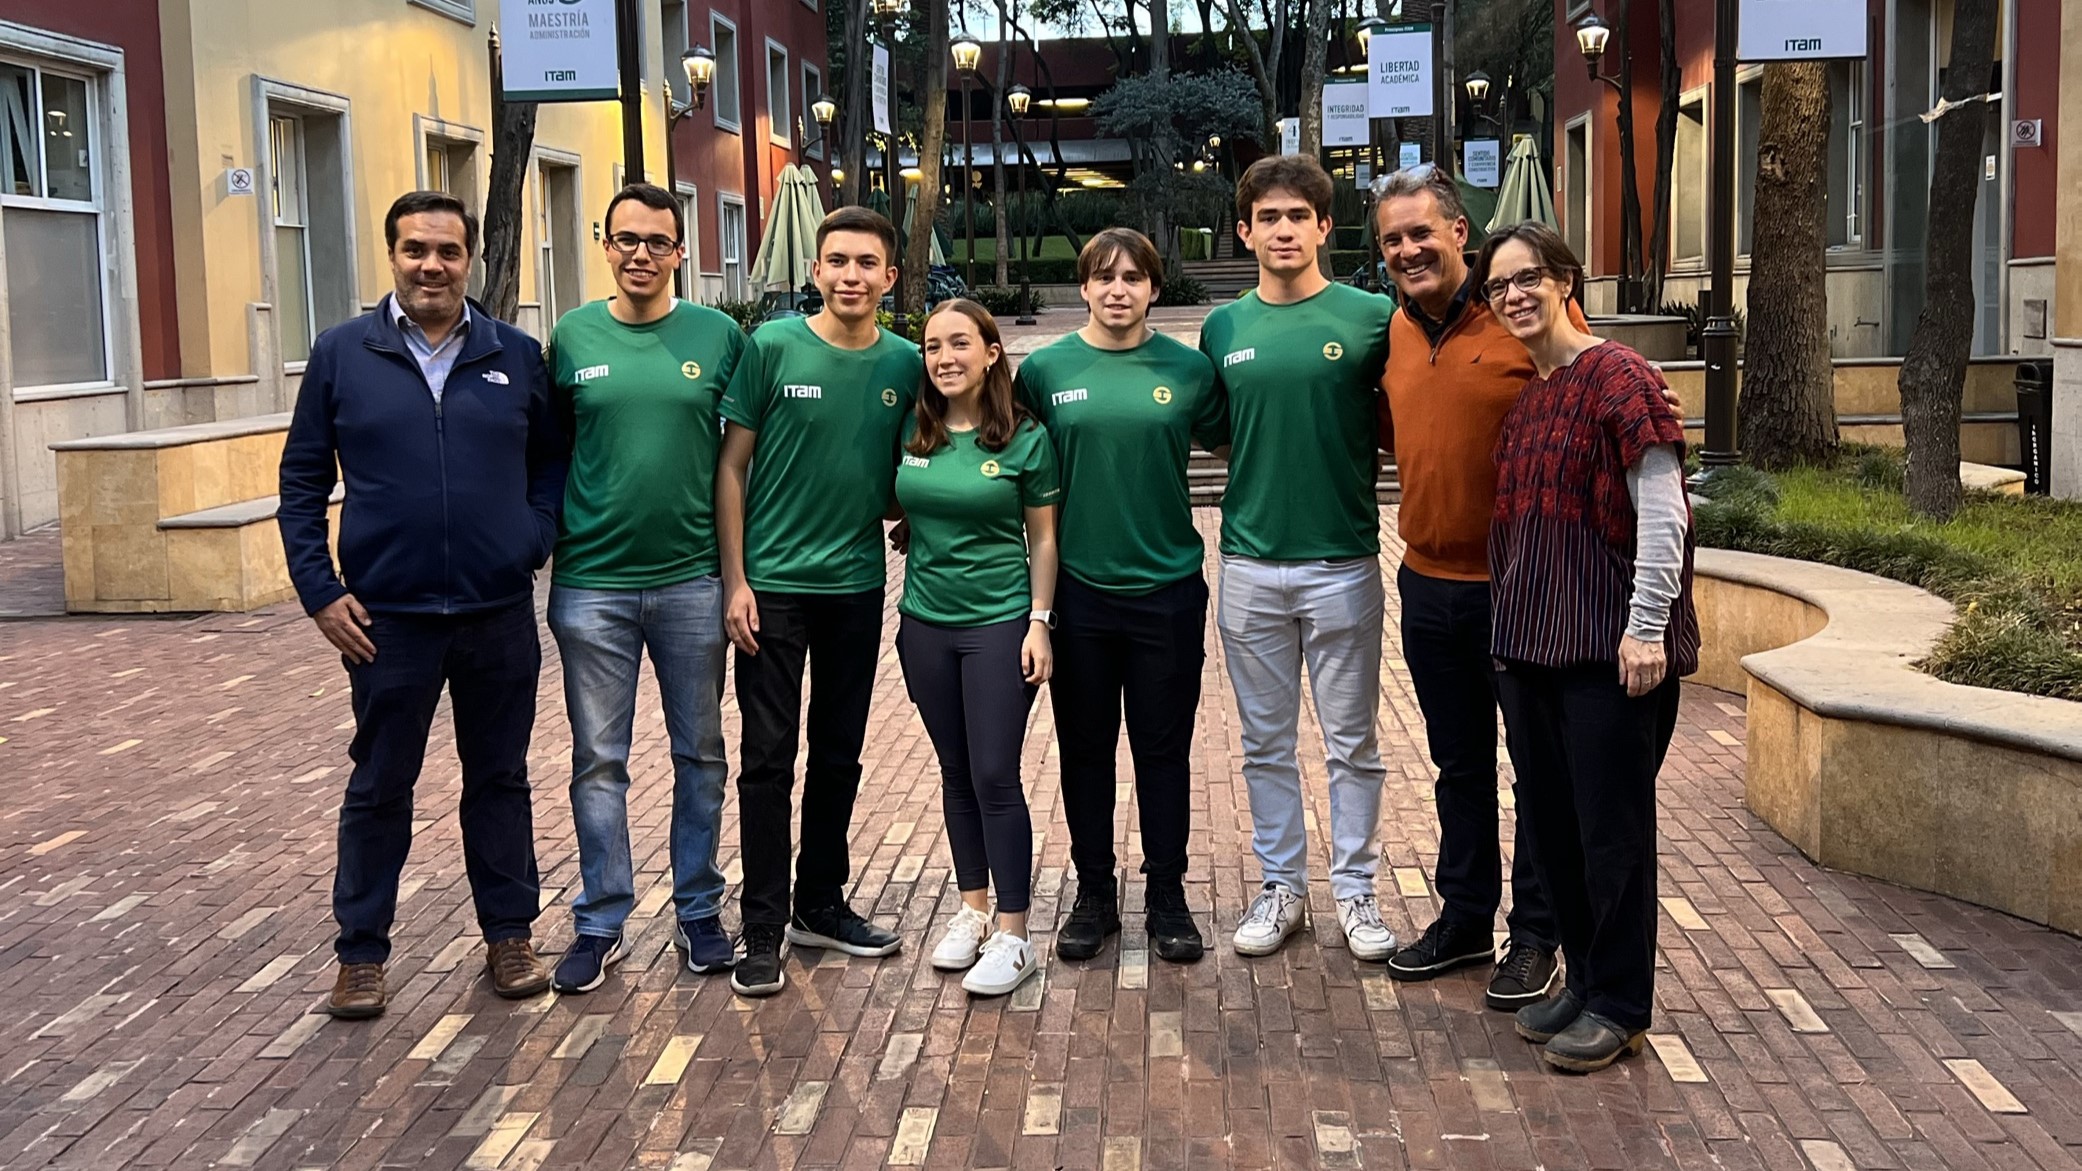 Jóvenes mexicanos viajan a Hong Kong para la olimpiada de economía y finanzas